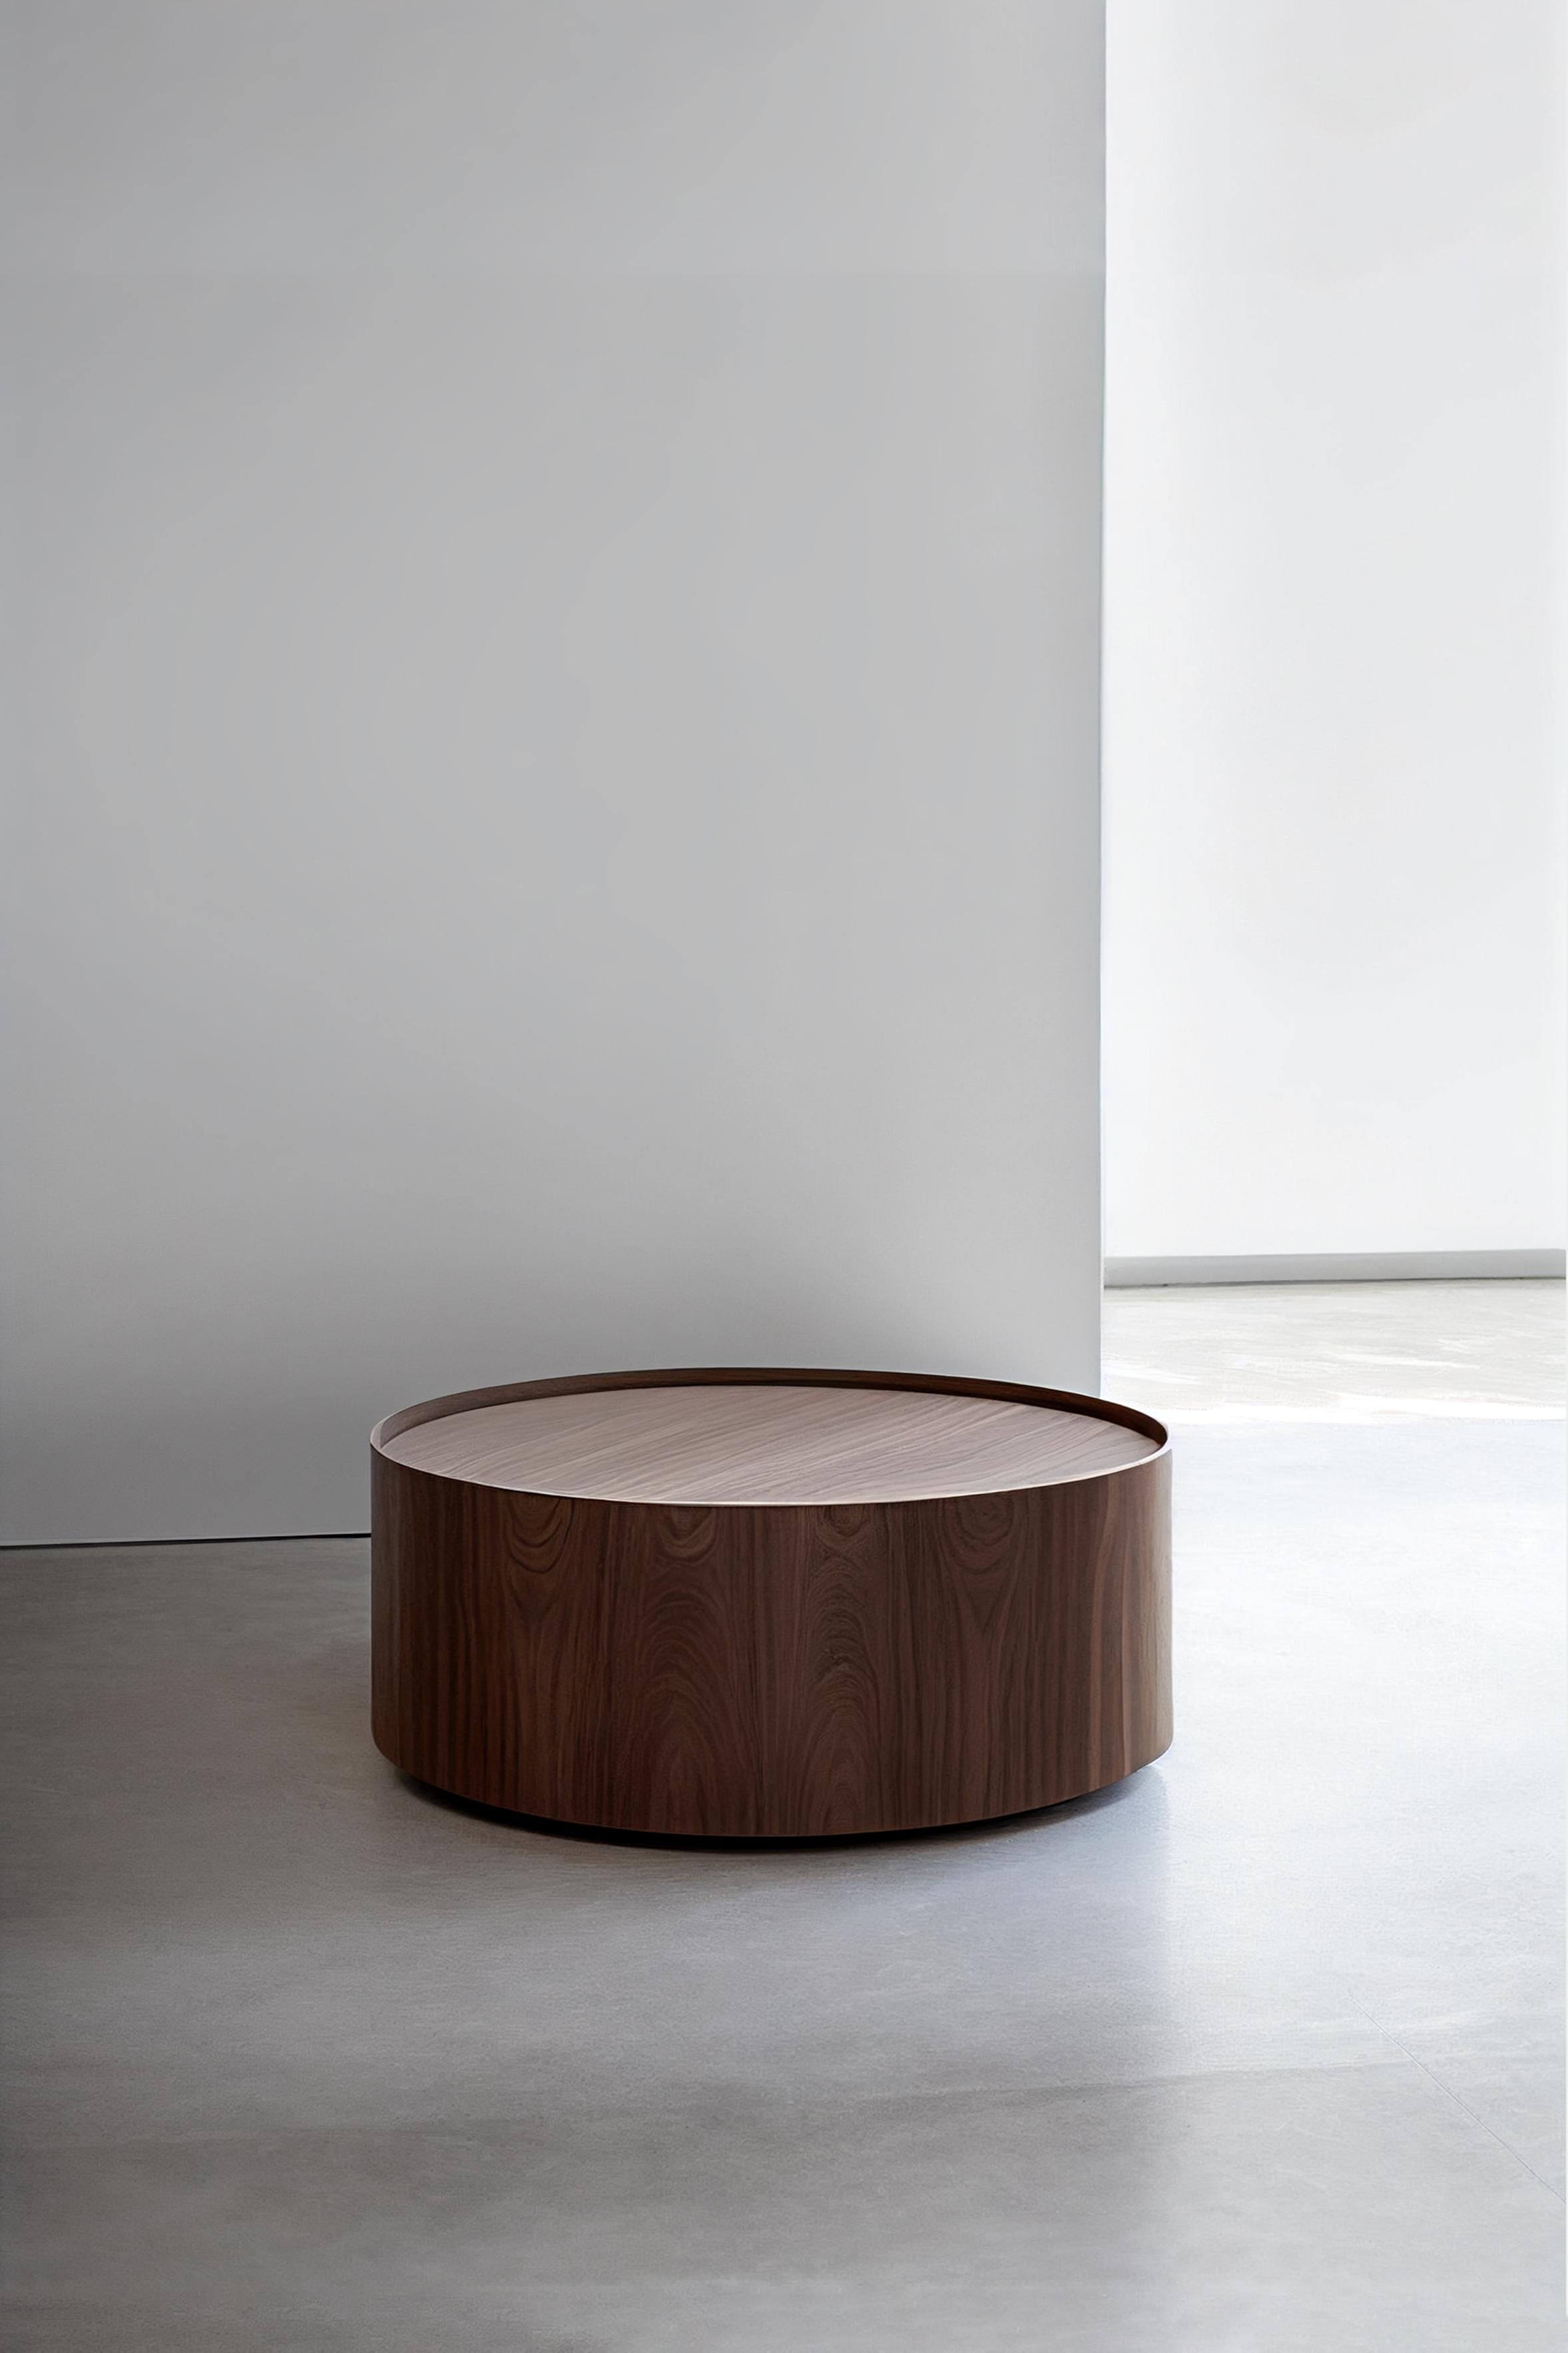 Une table basse brutaliste fabriquée en mdf de qualité supérieure avec une belle finition en placage de bois. 
Toutes les pièces sont recouvertes d'une finition semi-mate en polyuréthane. 

La solidité de la construction et le savoir-faire